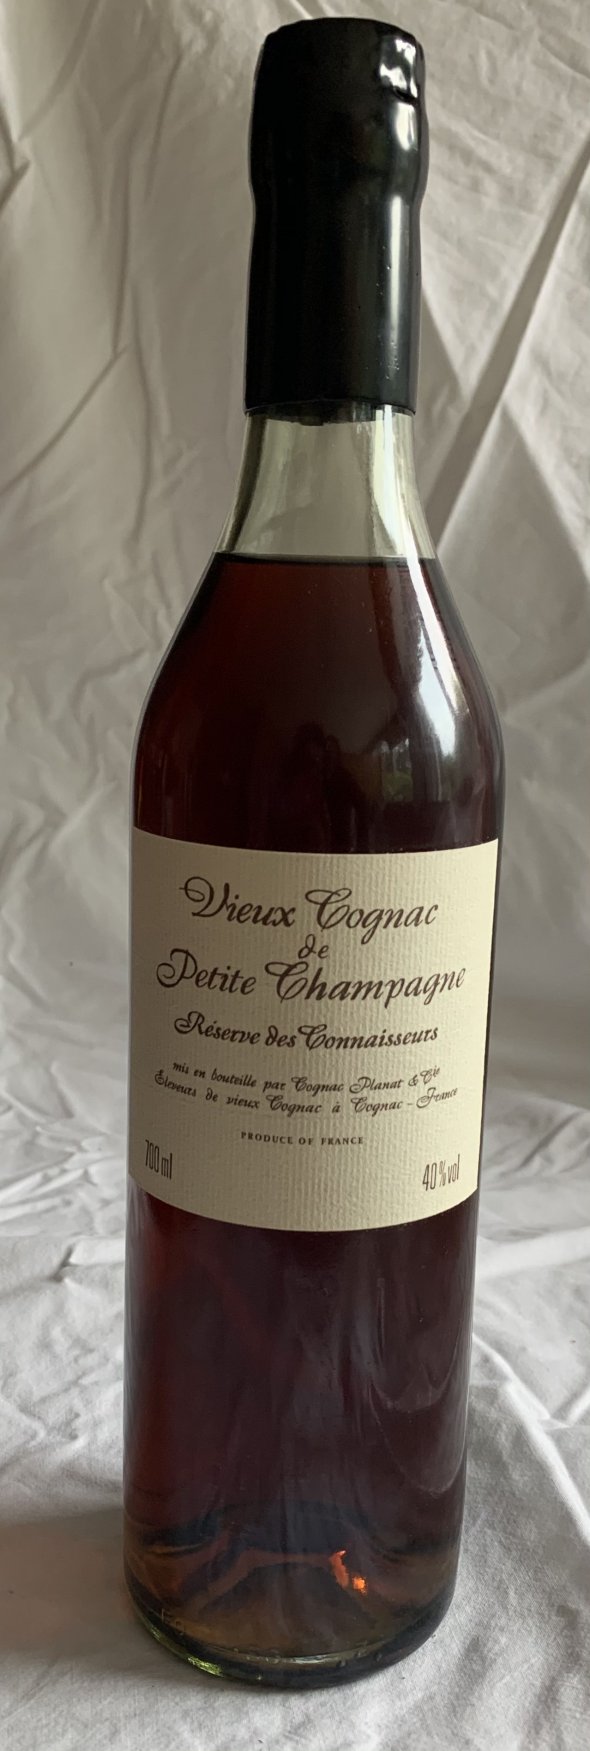 Vieux Cognac de petit champagne 